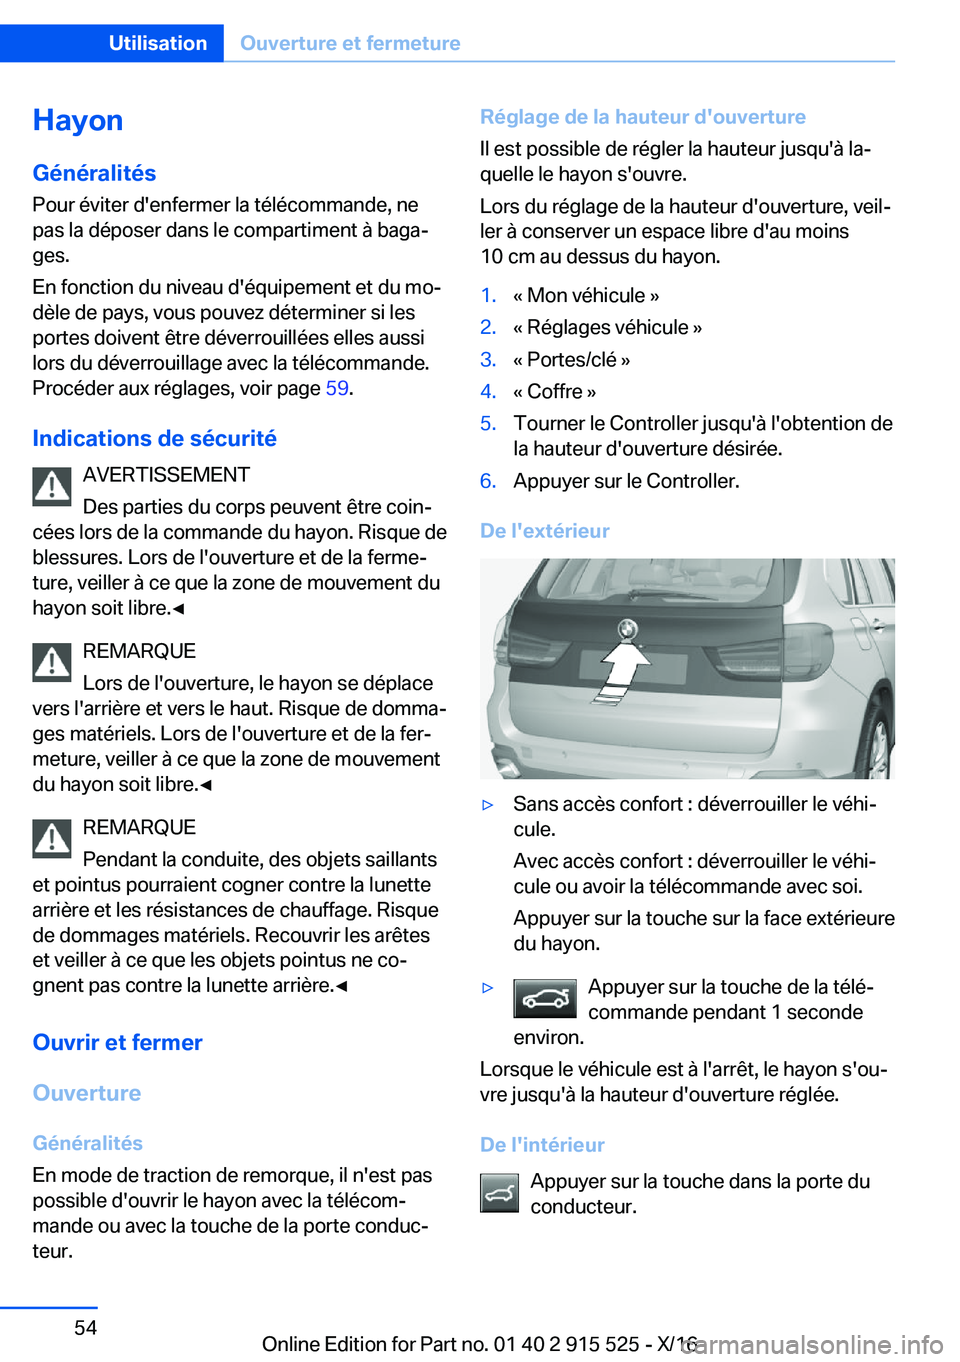 BMW X5 2017  Notices Demploi (in French) �H�a�y�o�n�G�é�n�é�r�a�l�i�t�é�s
�P�o�u�r� �é�v�i�t�e�r� �d�'�e�n�f�e�r�m�e�r� �l�a� �t�é�l�é�c�o�m�m�a�n�d�e�,� �n�e
�p�a�s� �l�a� �d�é�p�o�s�e�r� �d�a�n�s� �l�e� �c�o�m�p�a�r�t�i�m�e�n�t�